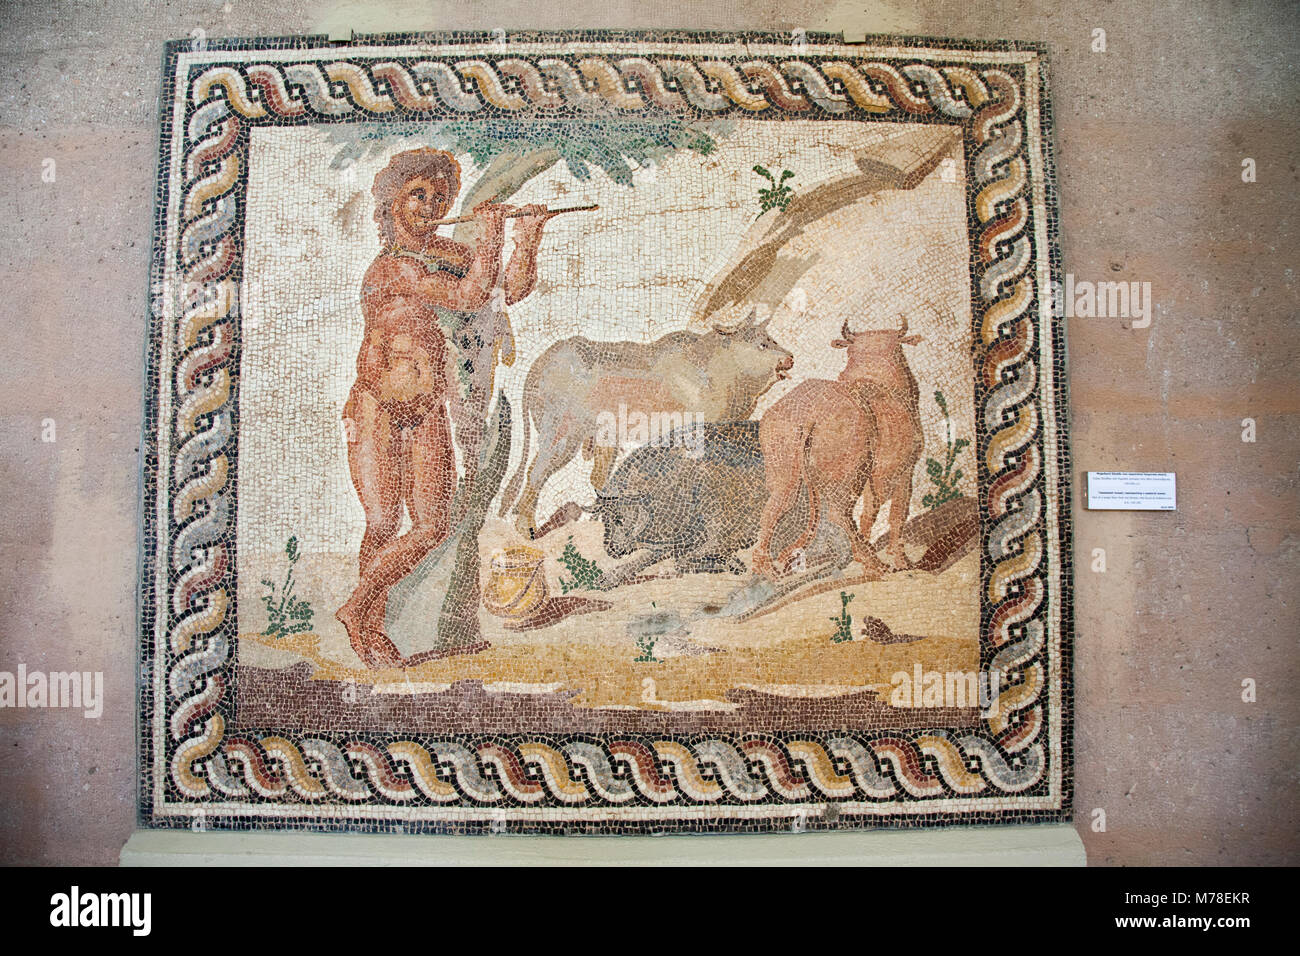 Europa, Griechenland, Peloponnes, Alt-korinth, Archäologisches Museum, Mosaik aus einer Etage einer römischen Villa, die eine pastorale Szene Stockfoto